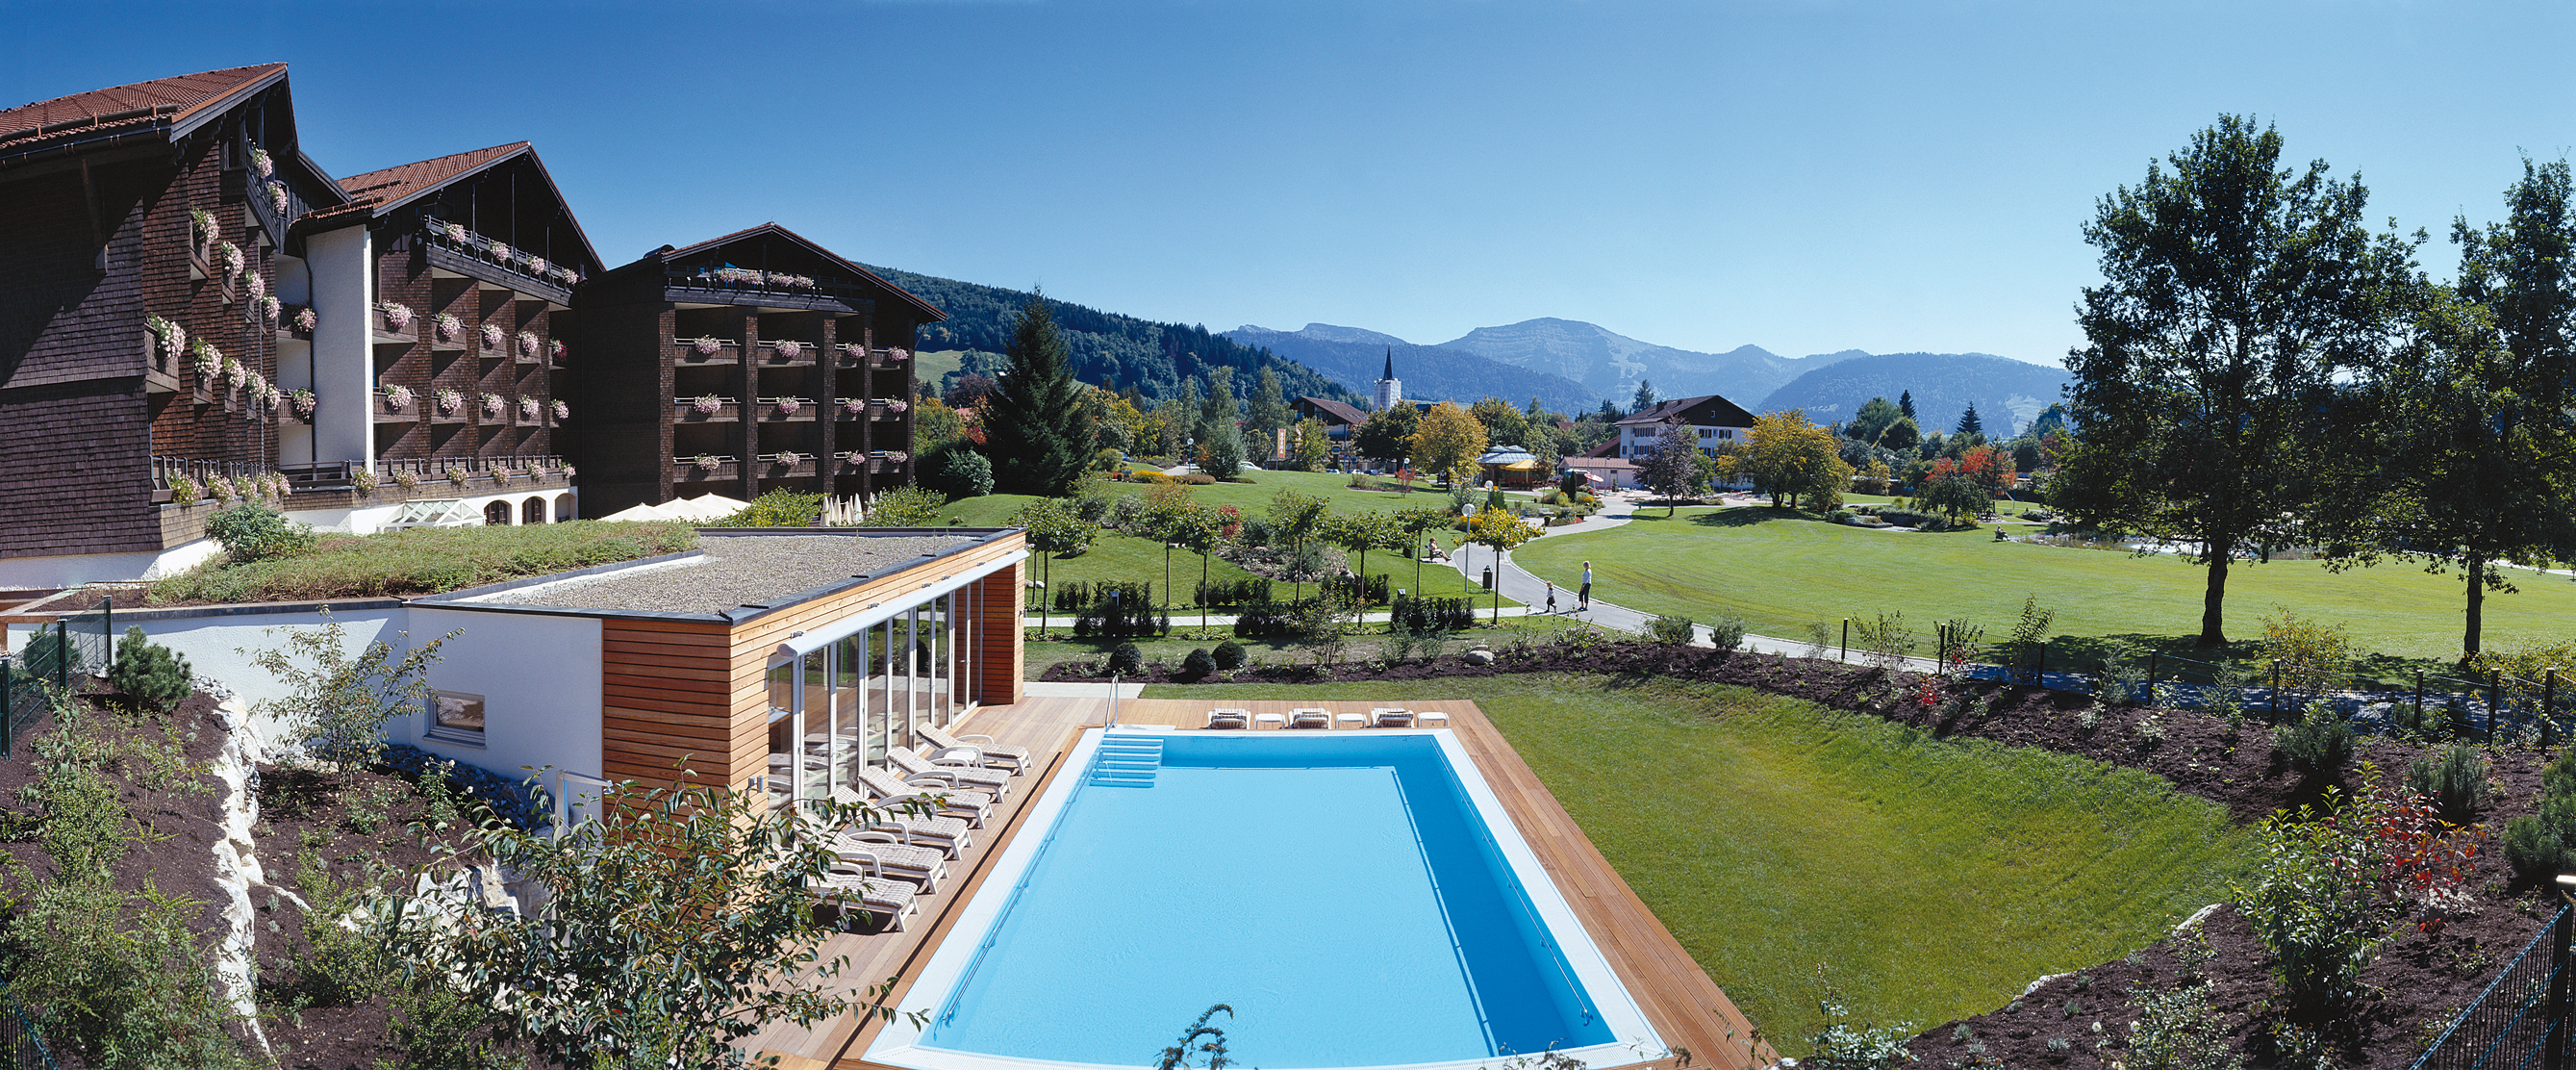 Lindner Hotel in Oberstaufen